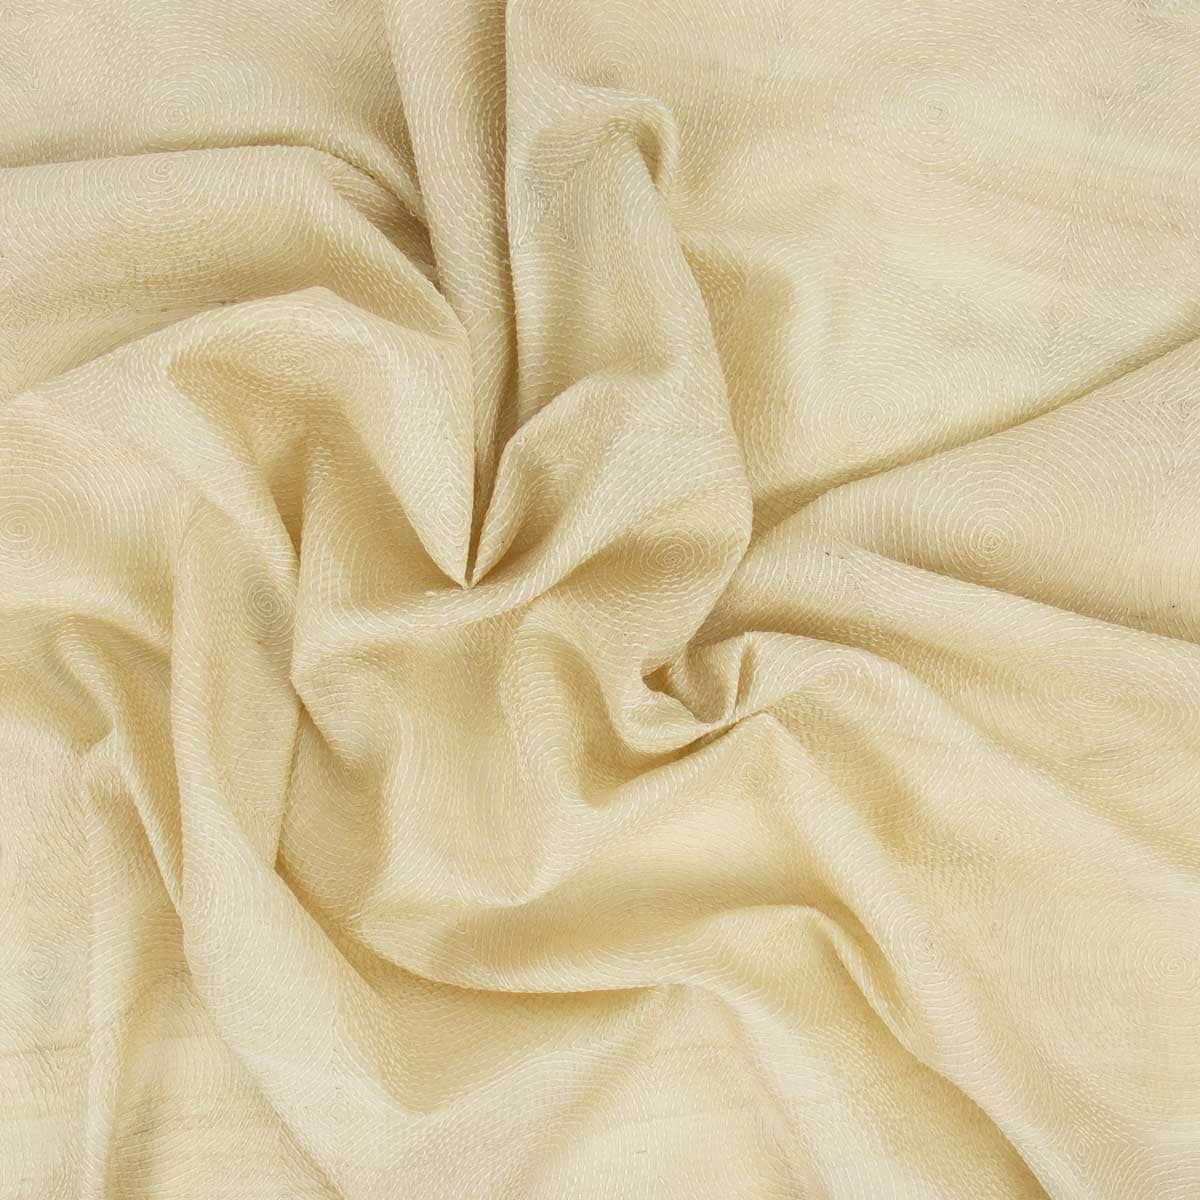 ROUND&ROUND Silk Fabric, beige/white